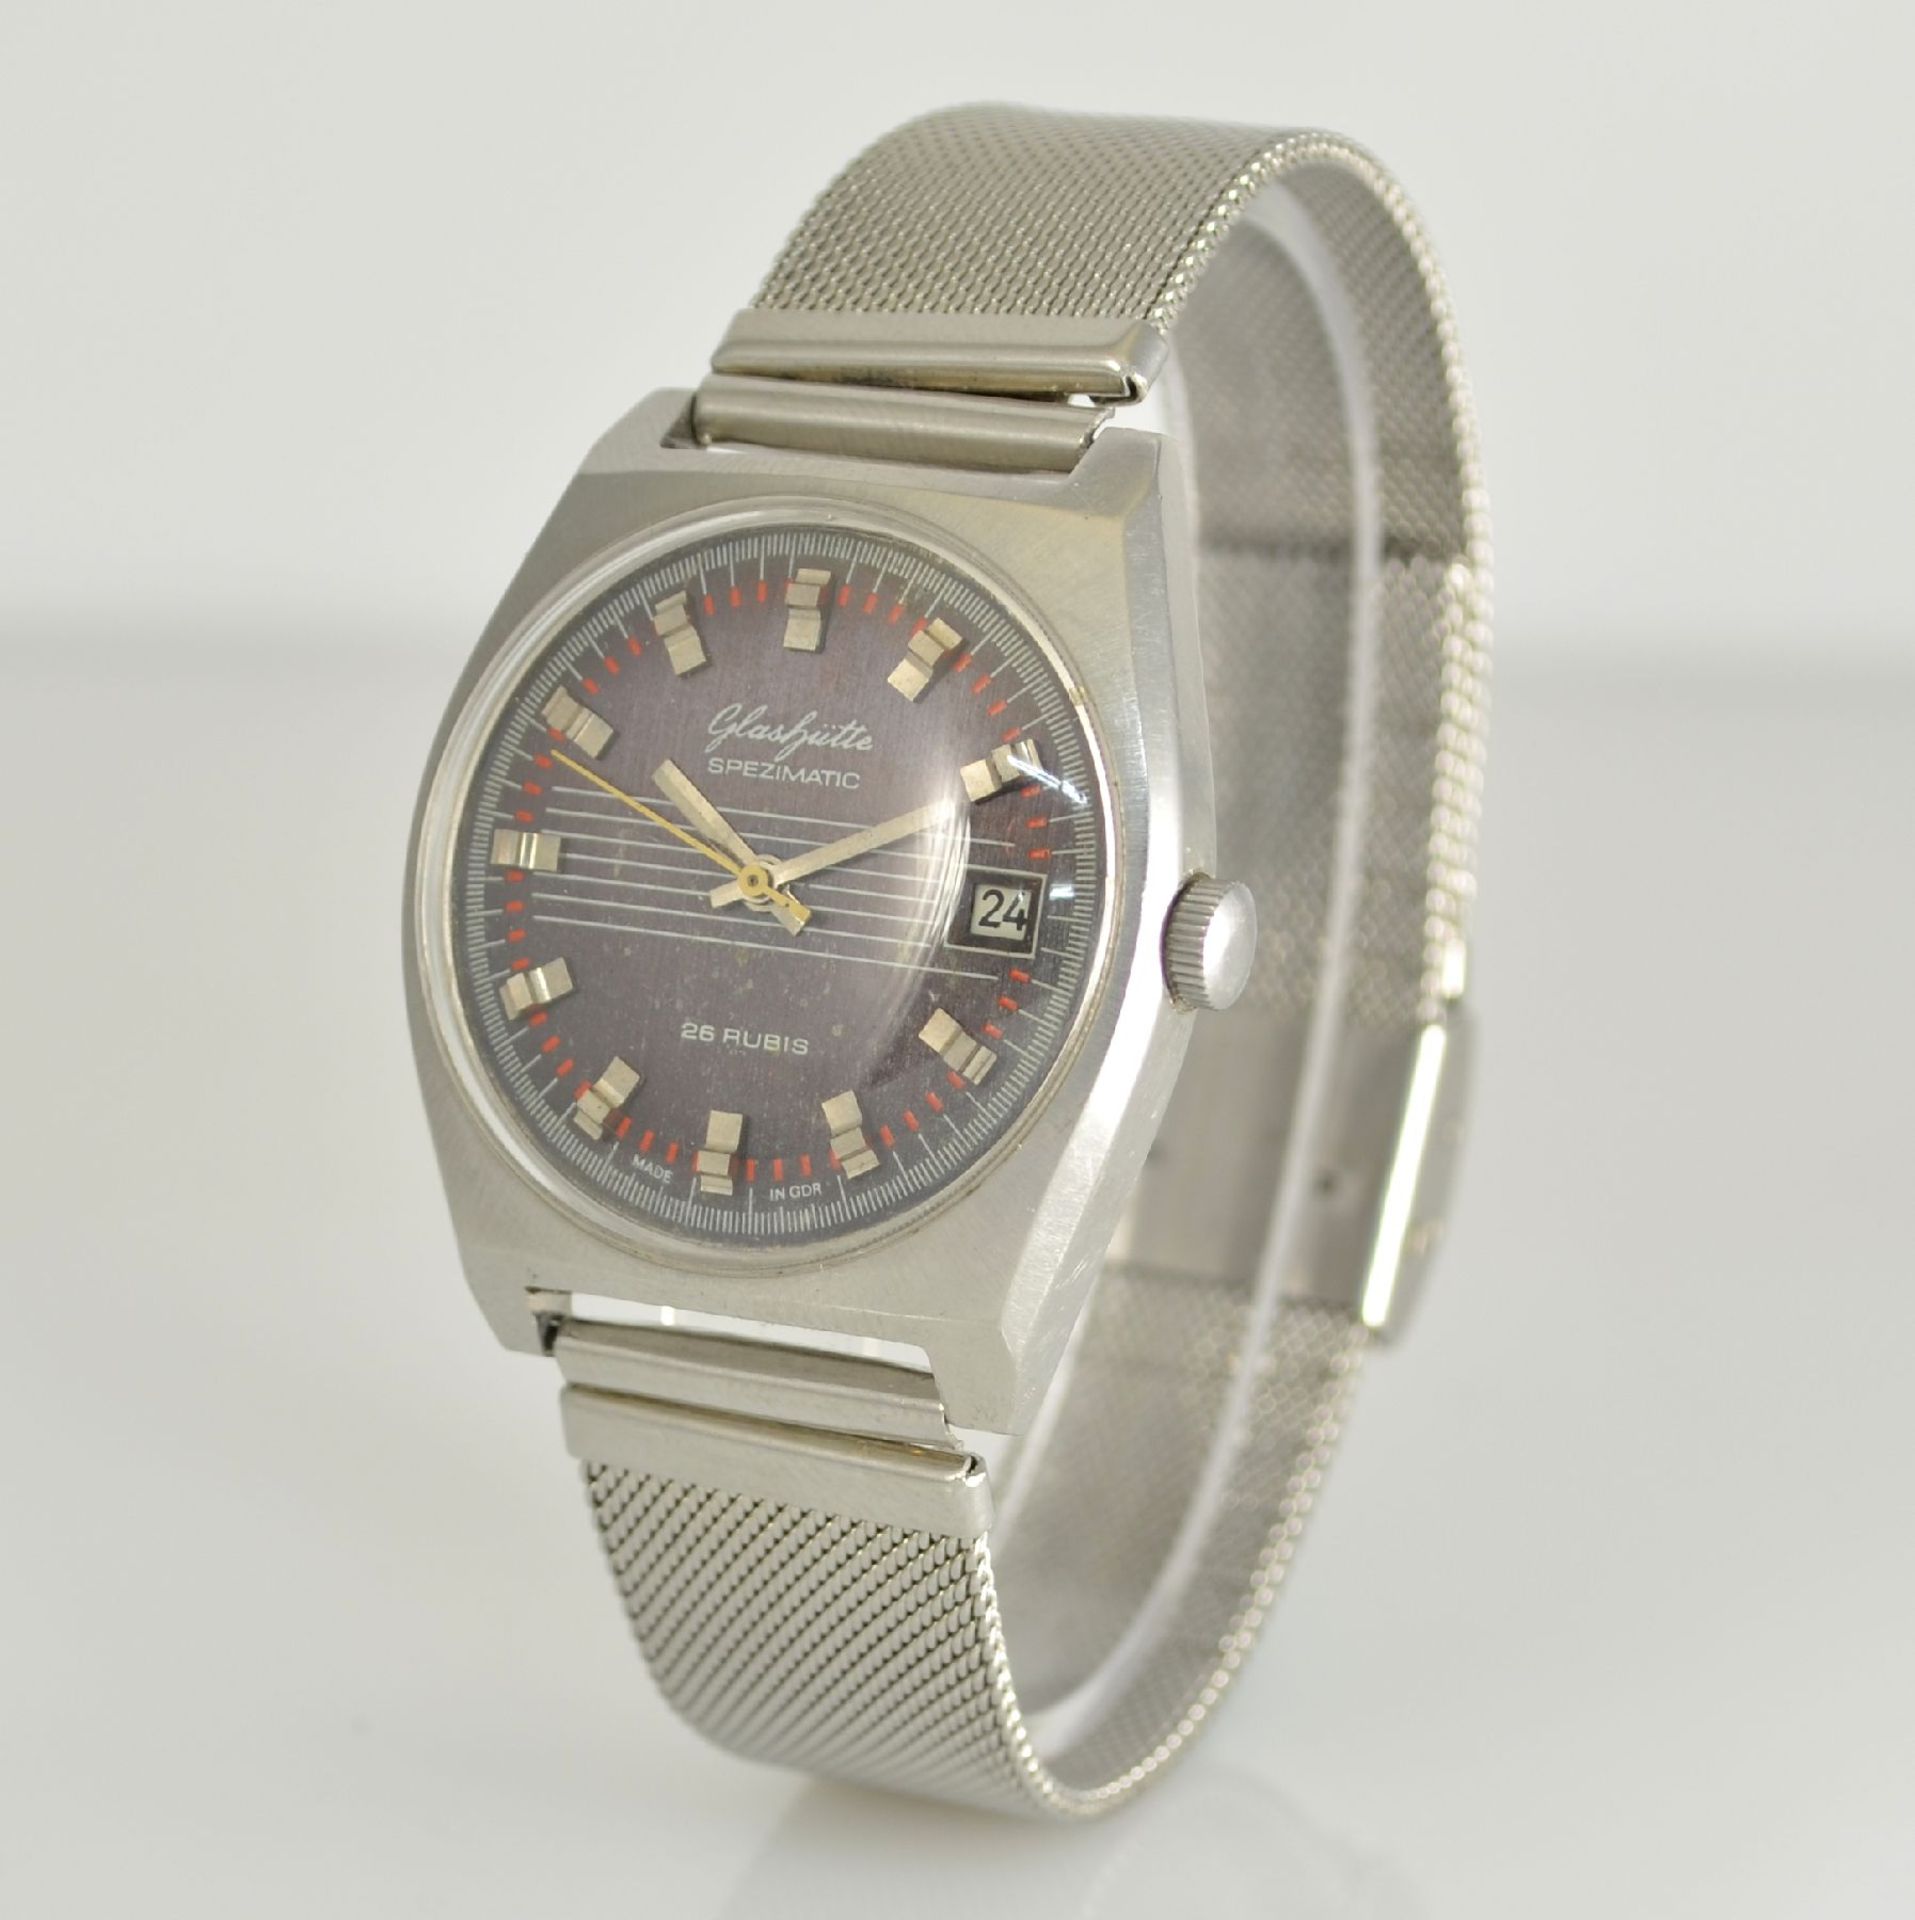 GLASHÜTTE Armbanduhr Spezimatic in Edelstahl, Automatik, DDR um 1970, Boden aufgedr., ausgef. - Bild 3 aus 6